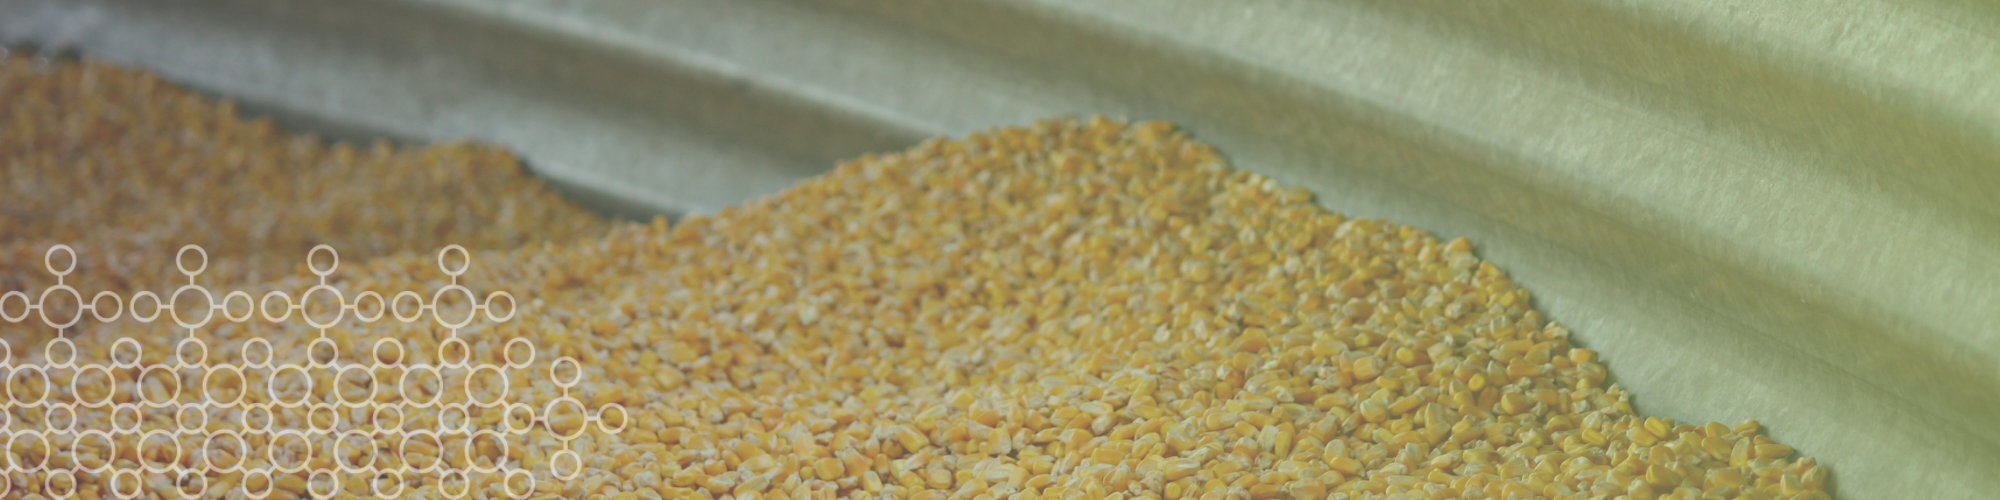 Desafios e oportunidades na utilização de inseticidas no milho armazenado